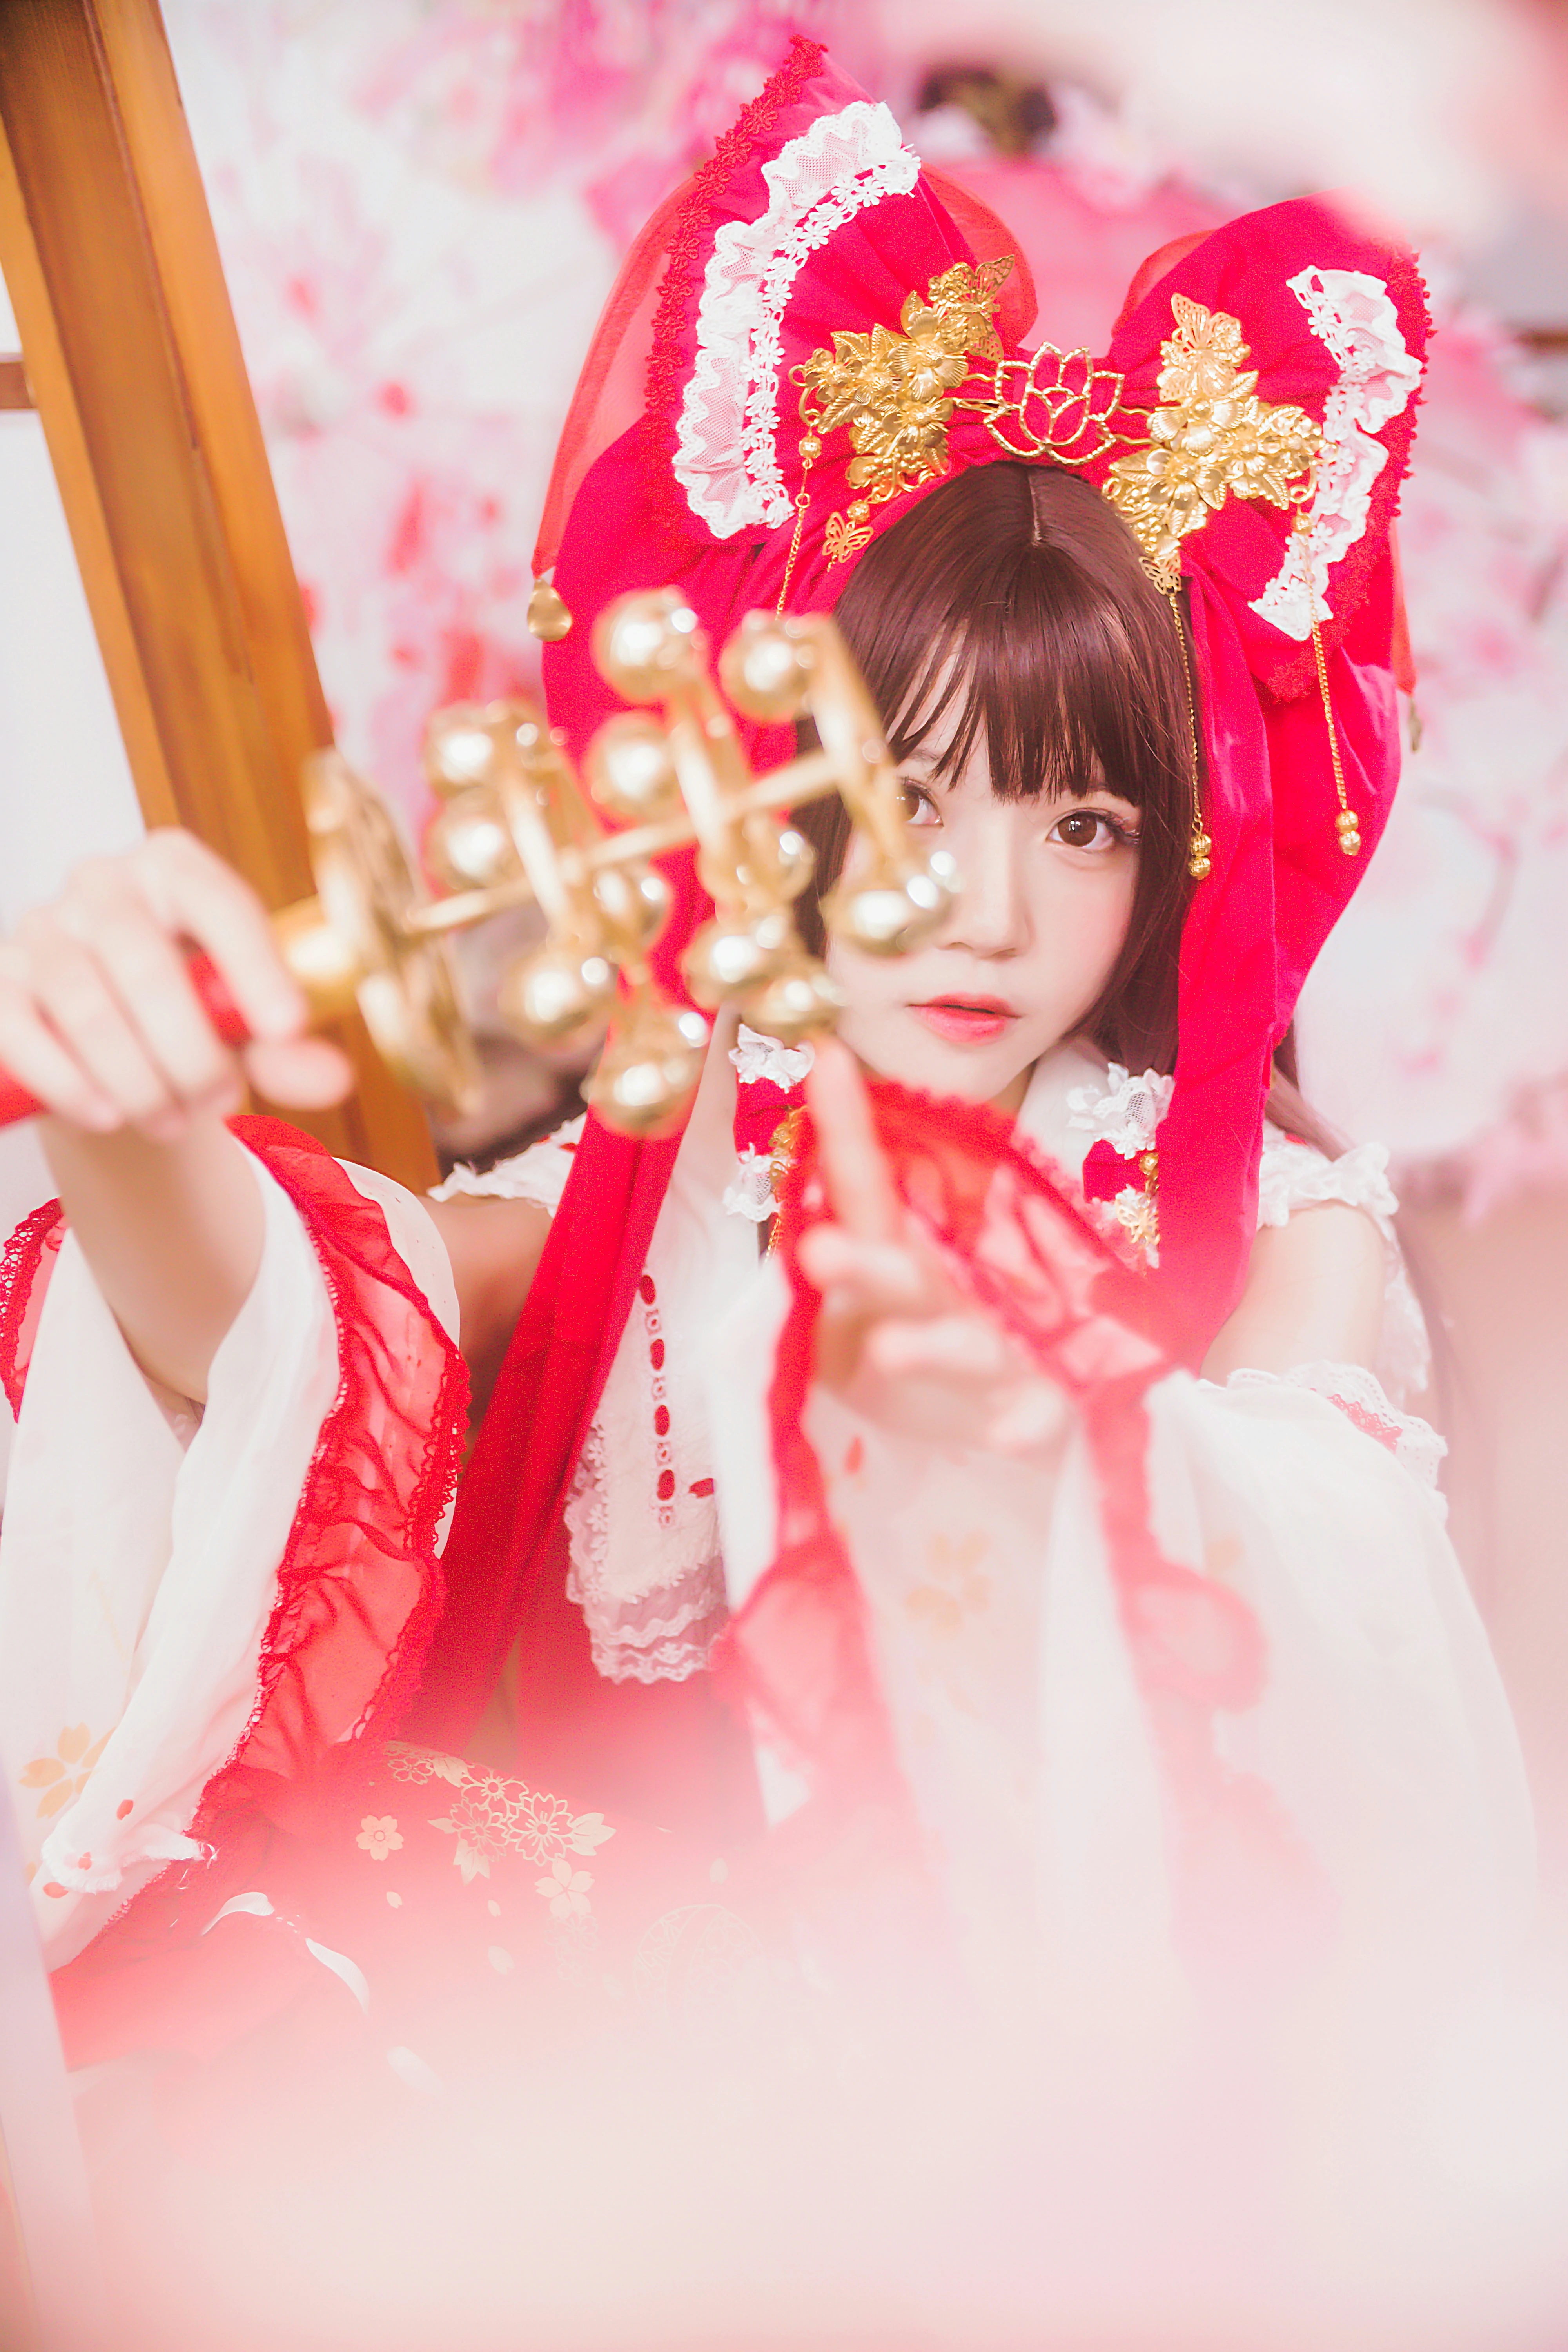 清纯少女小萝莉 桜桃喵 红色连身制服裙 和风写真,0025